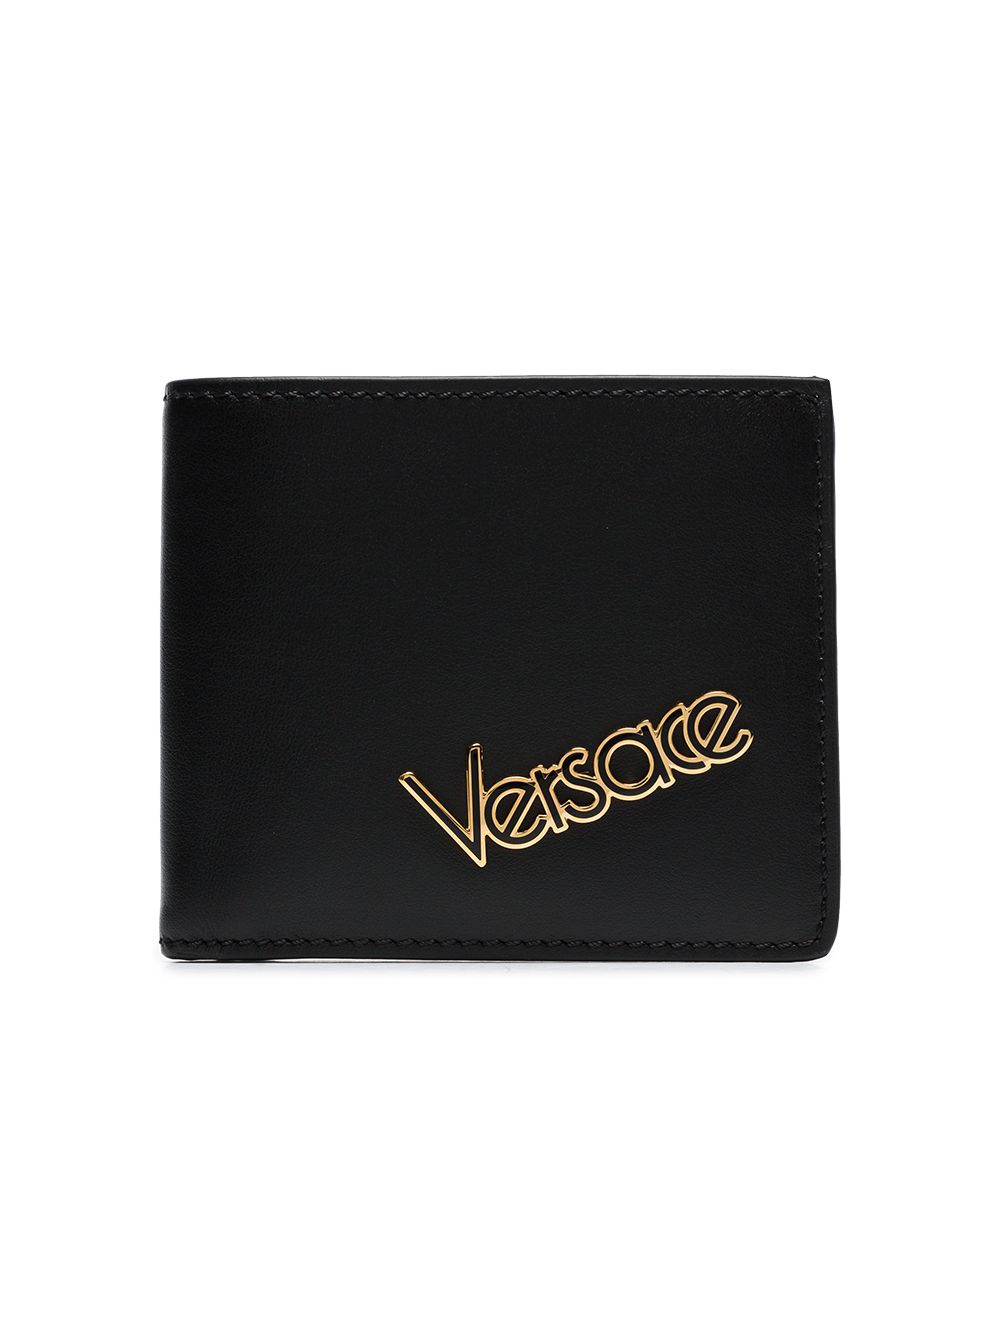 фото Versace кошелек с логотипом